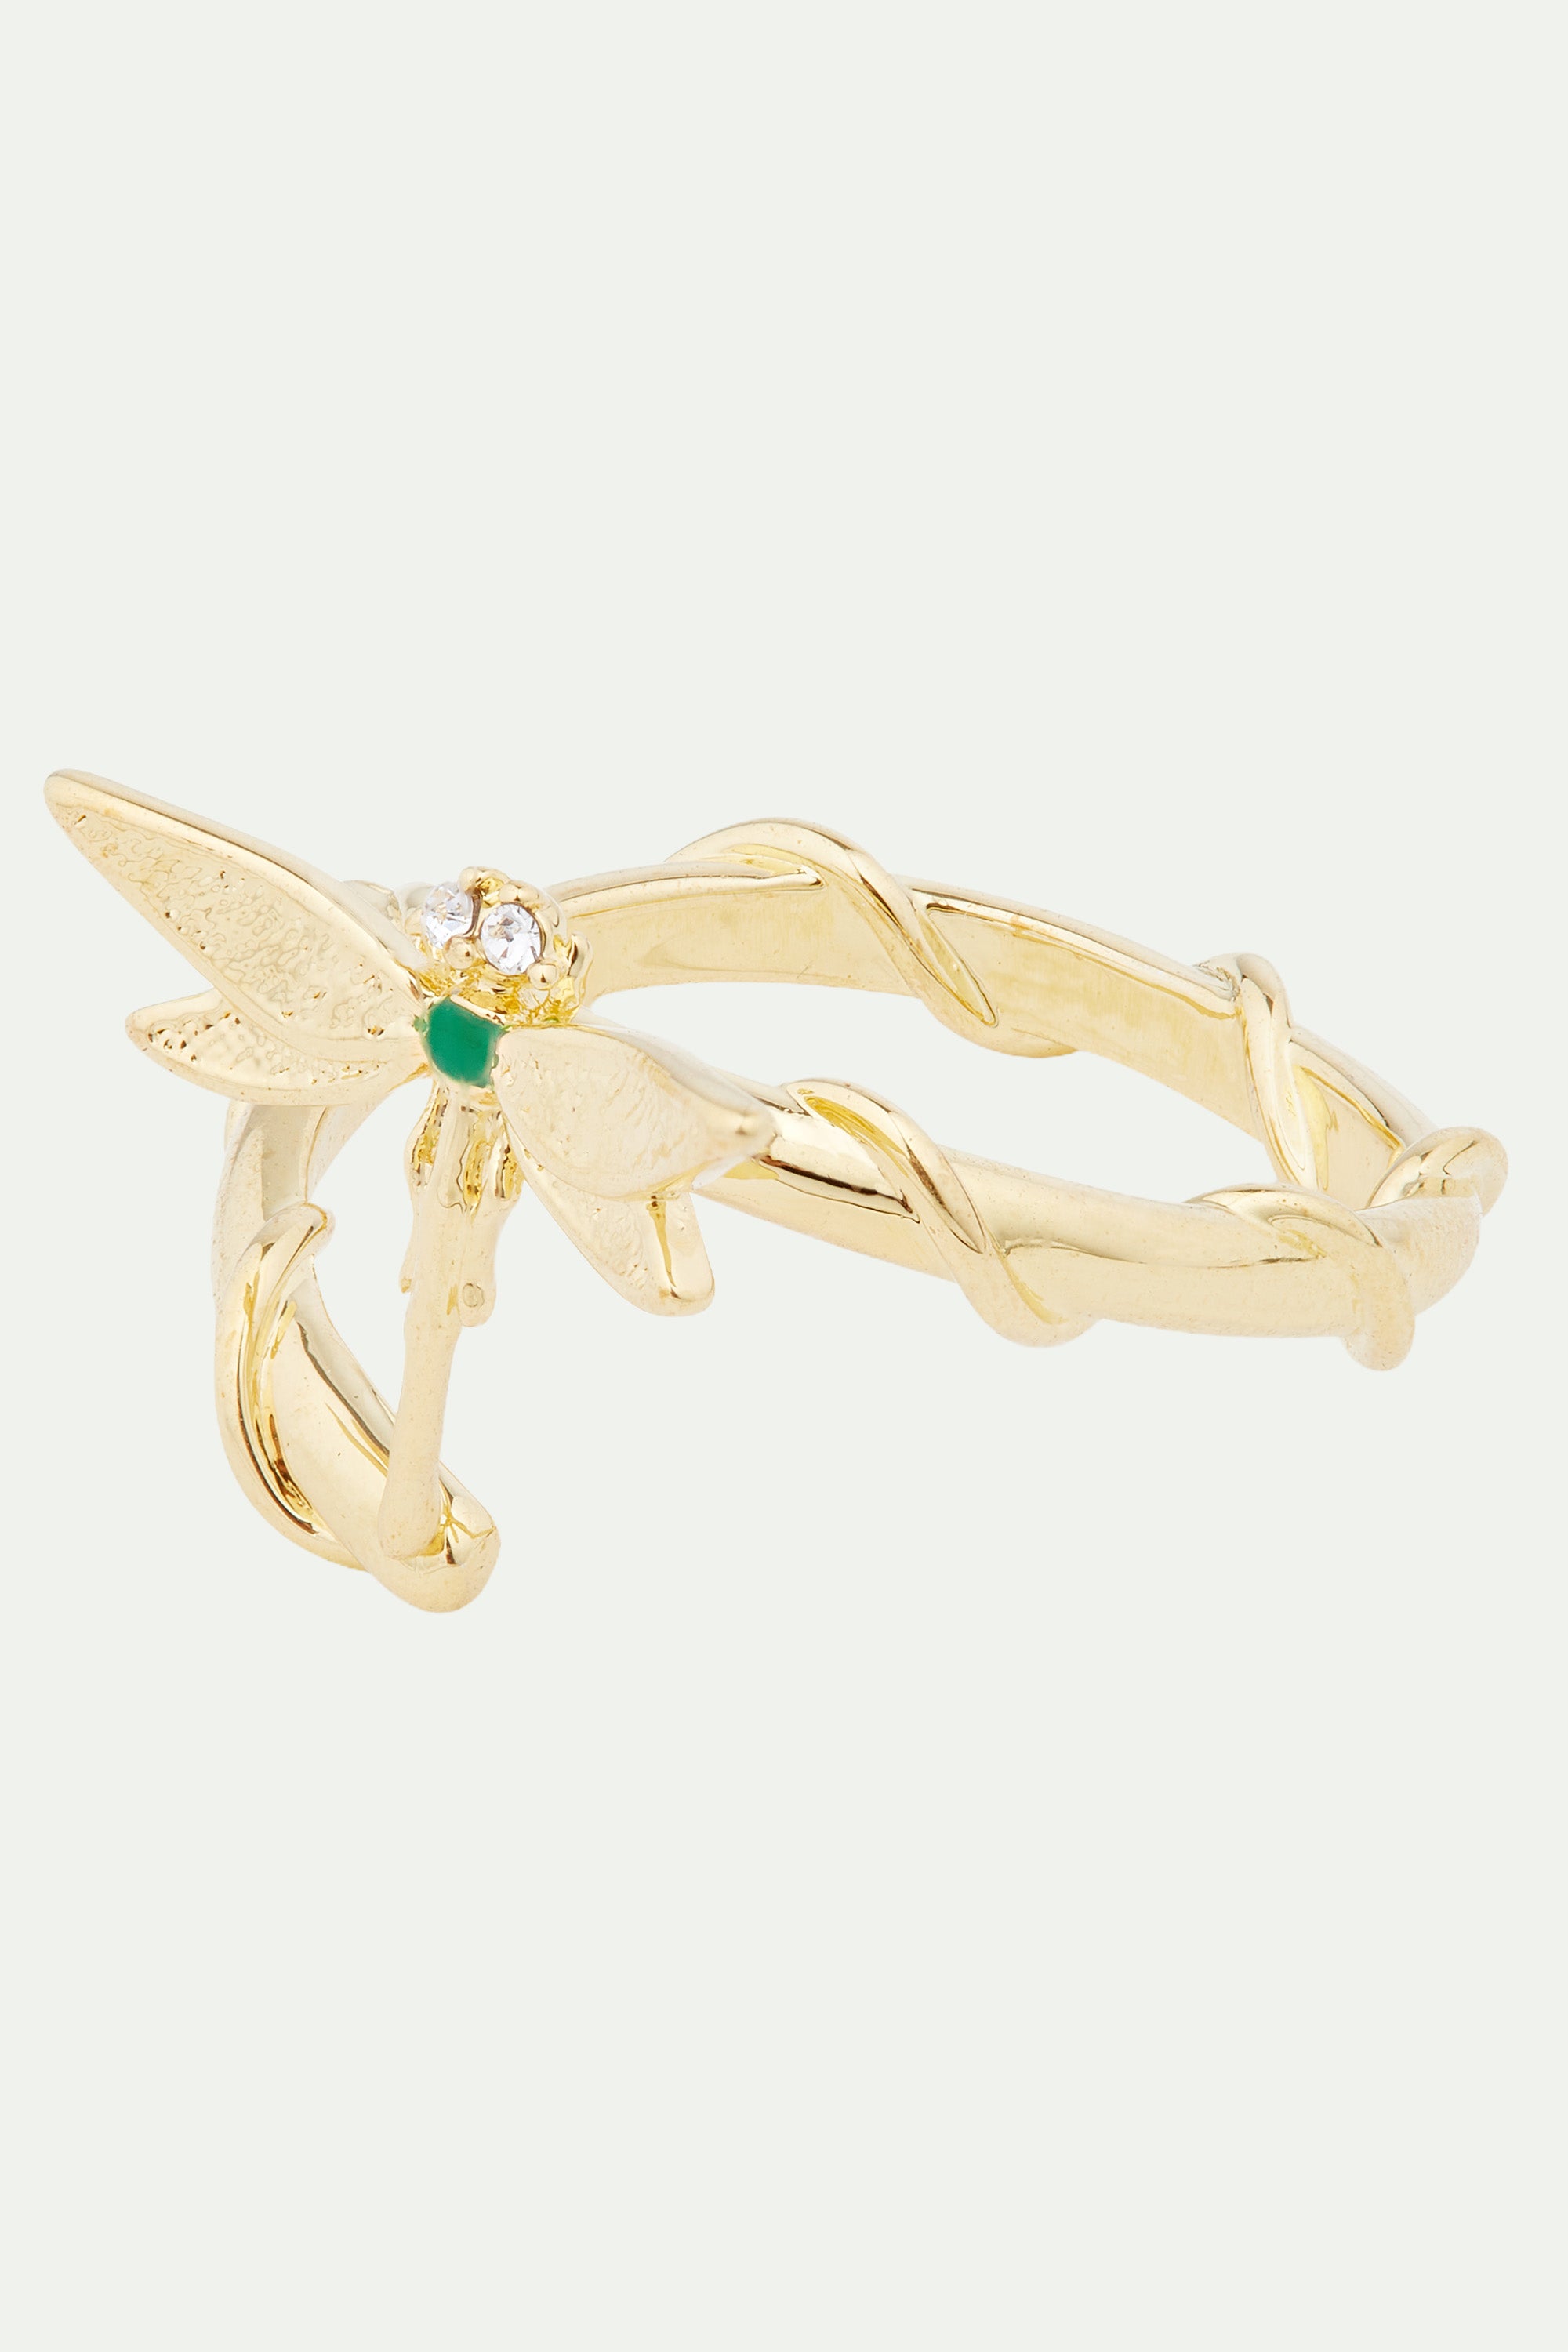 Golden dragonfly adjustable ring